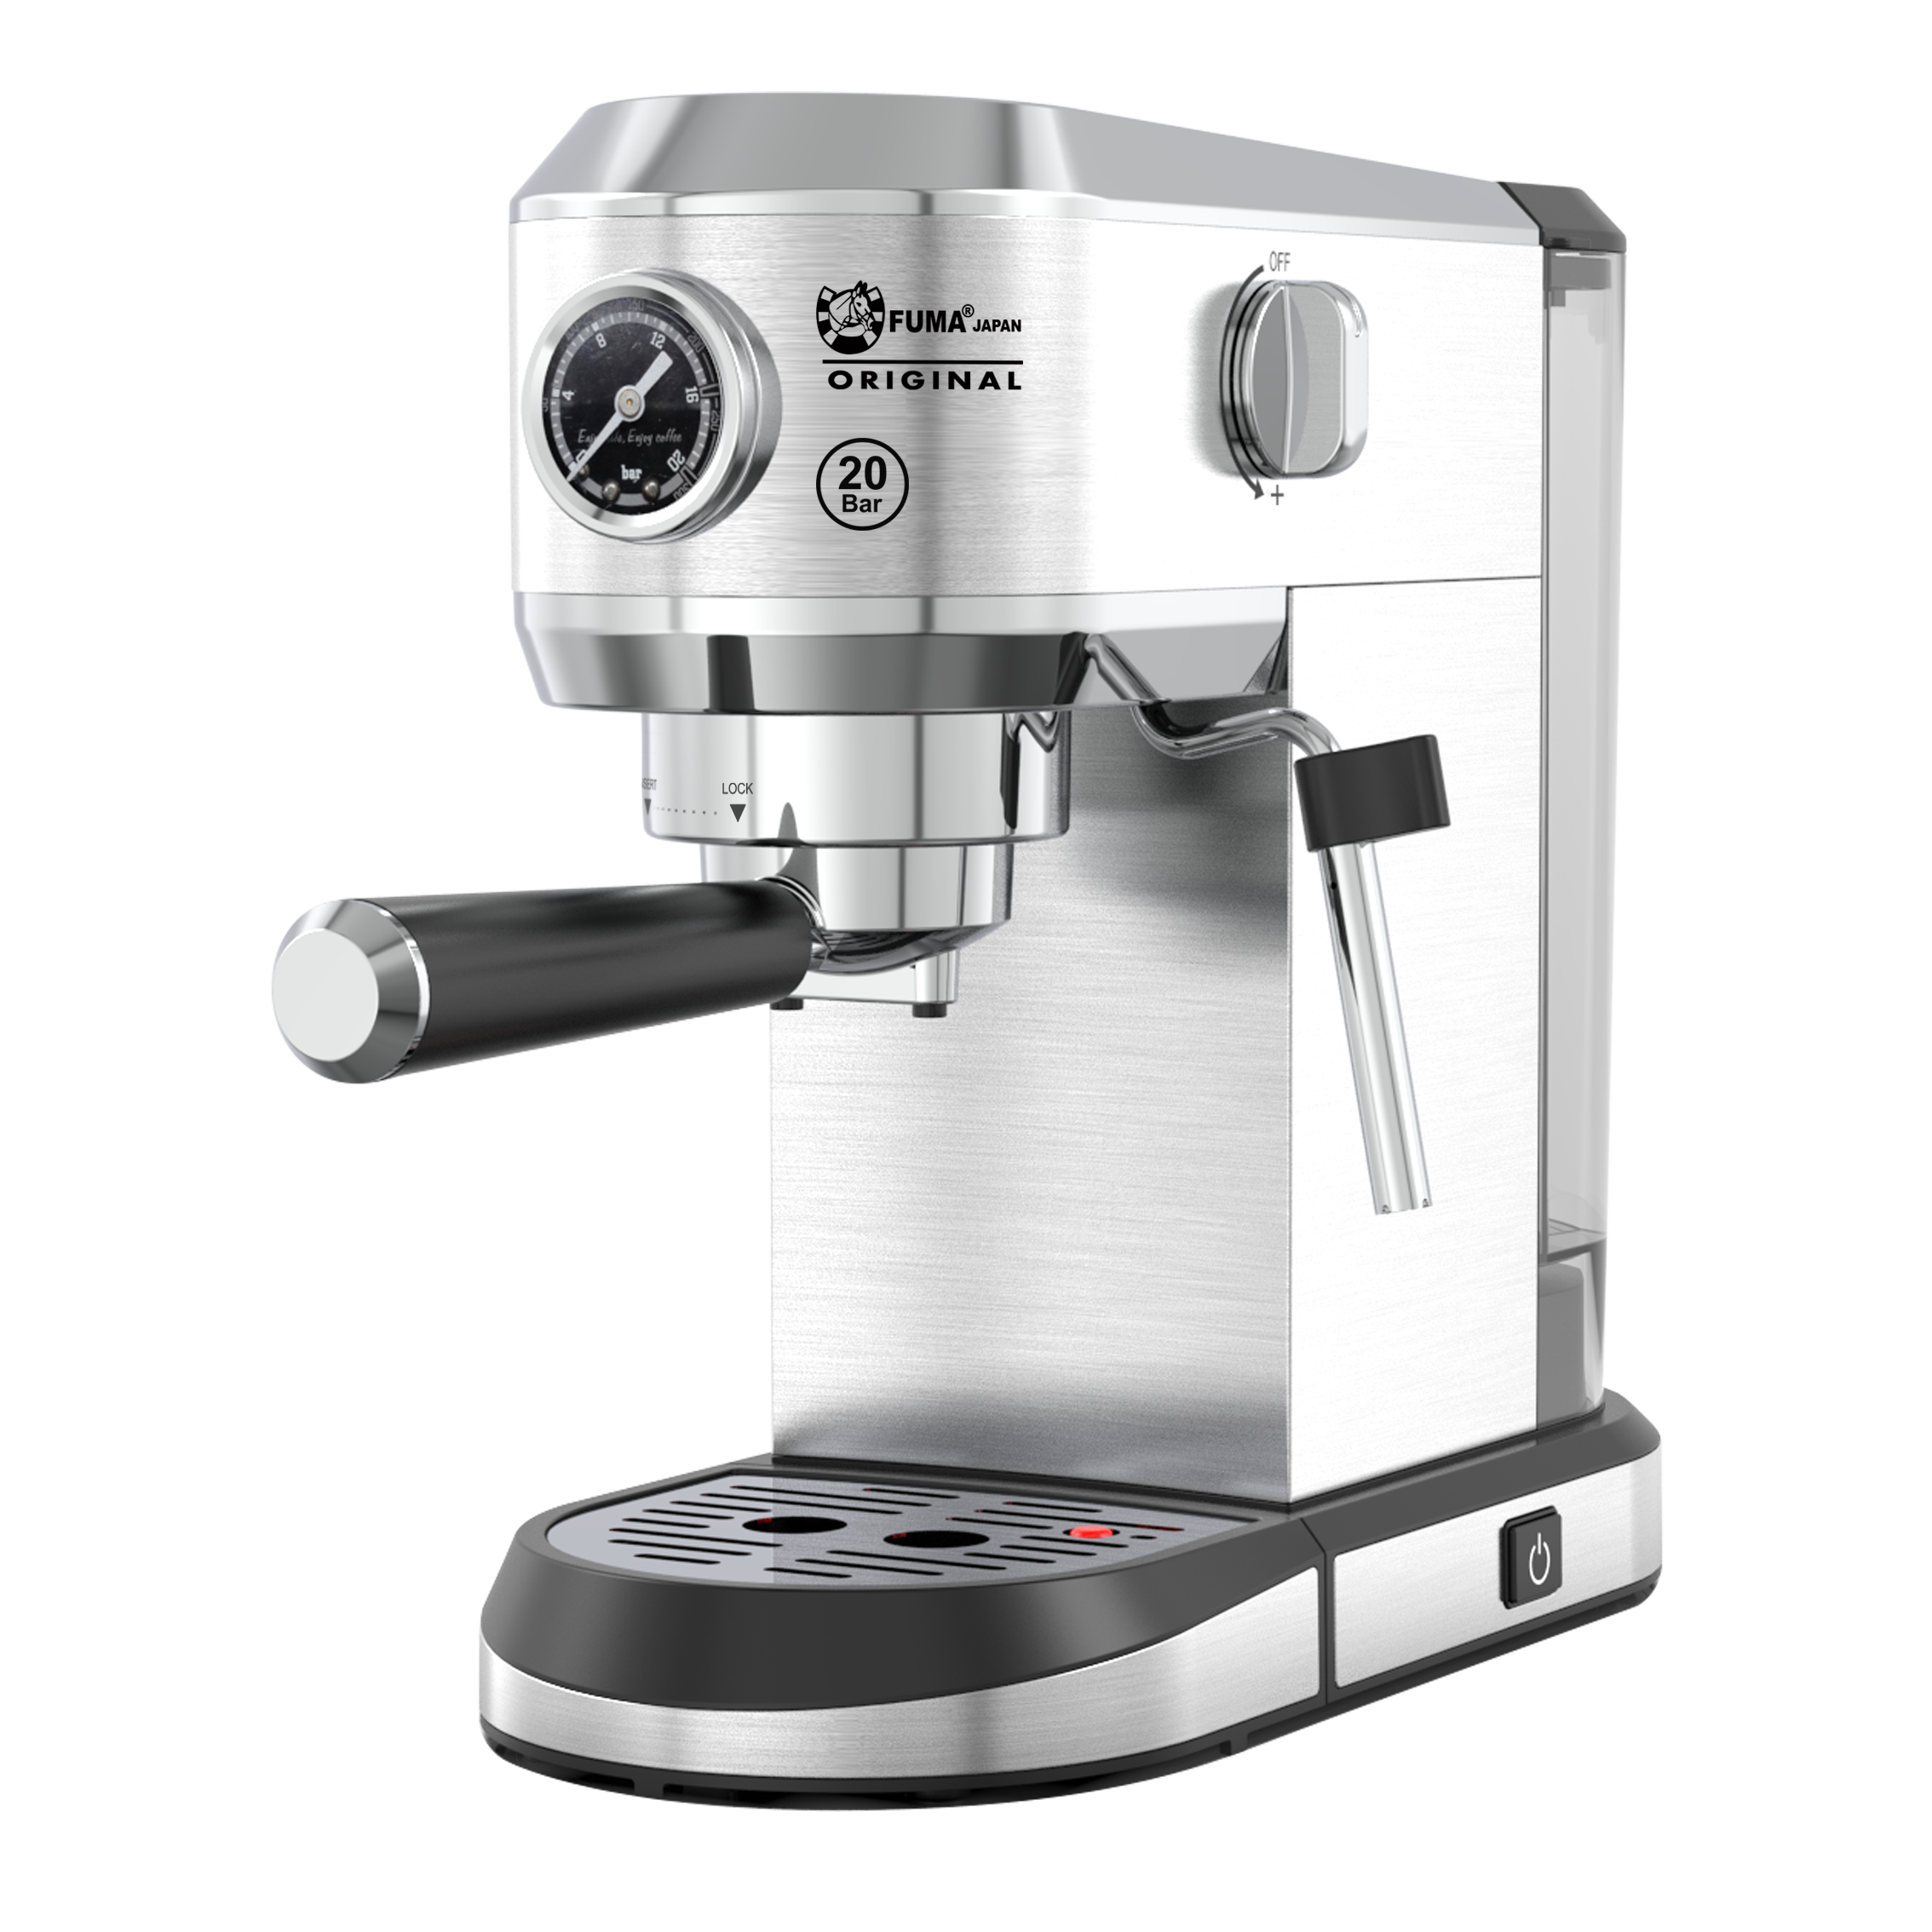 FU-2035-Espresso Maker (20 Bar)